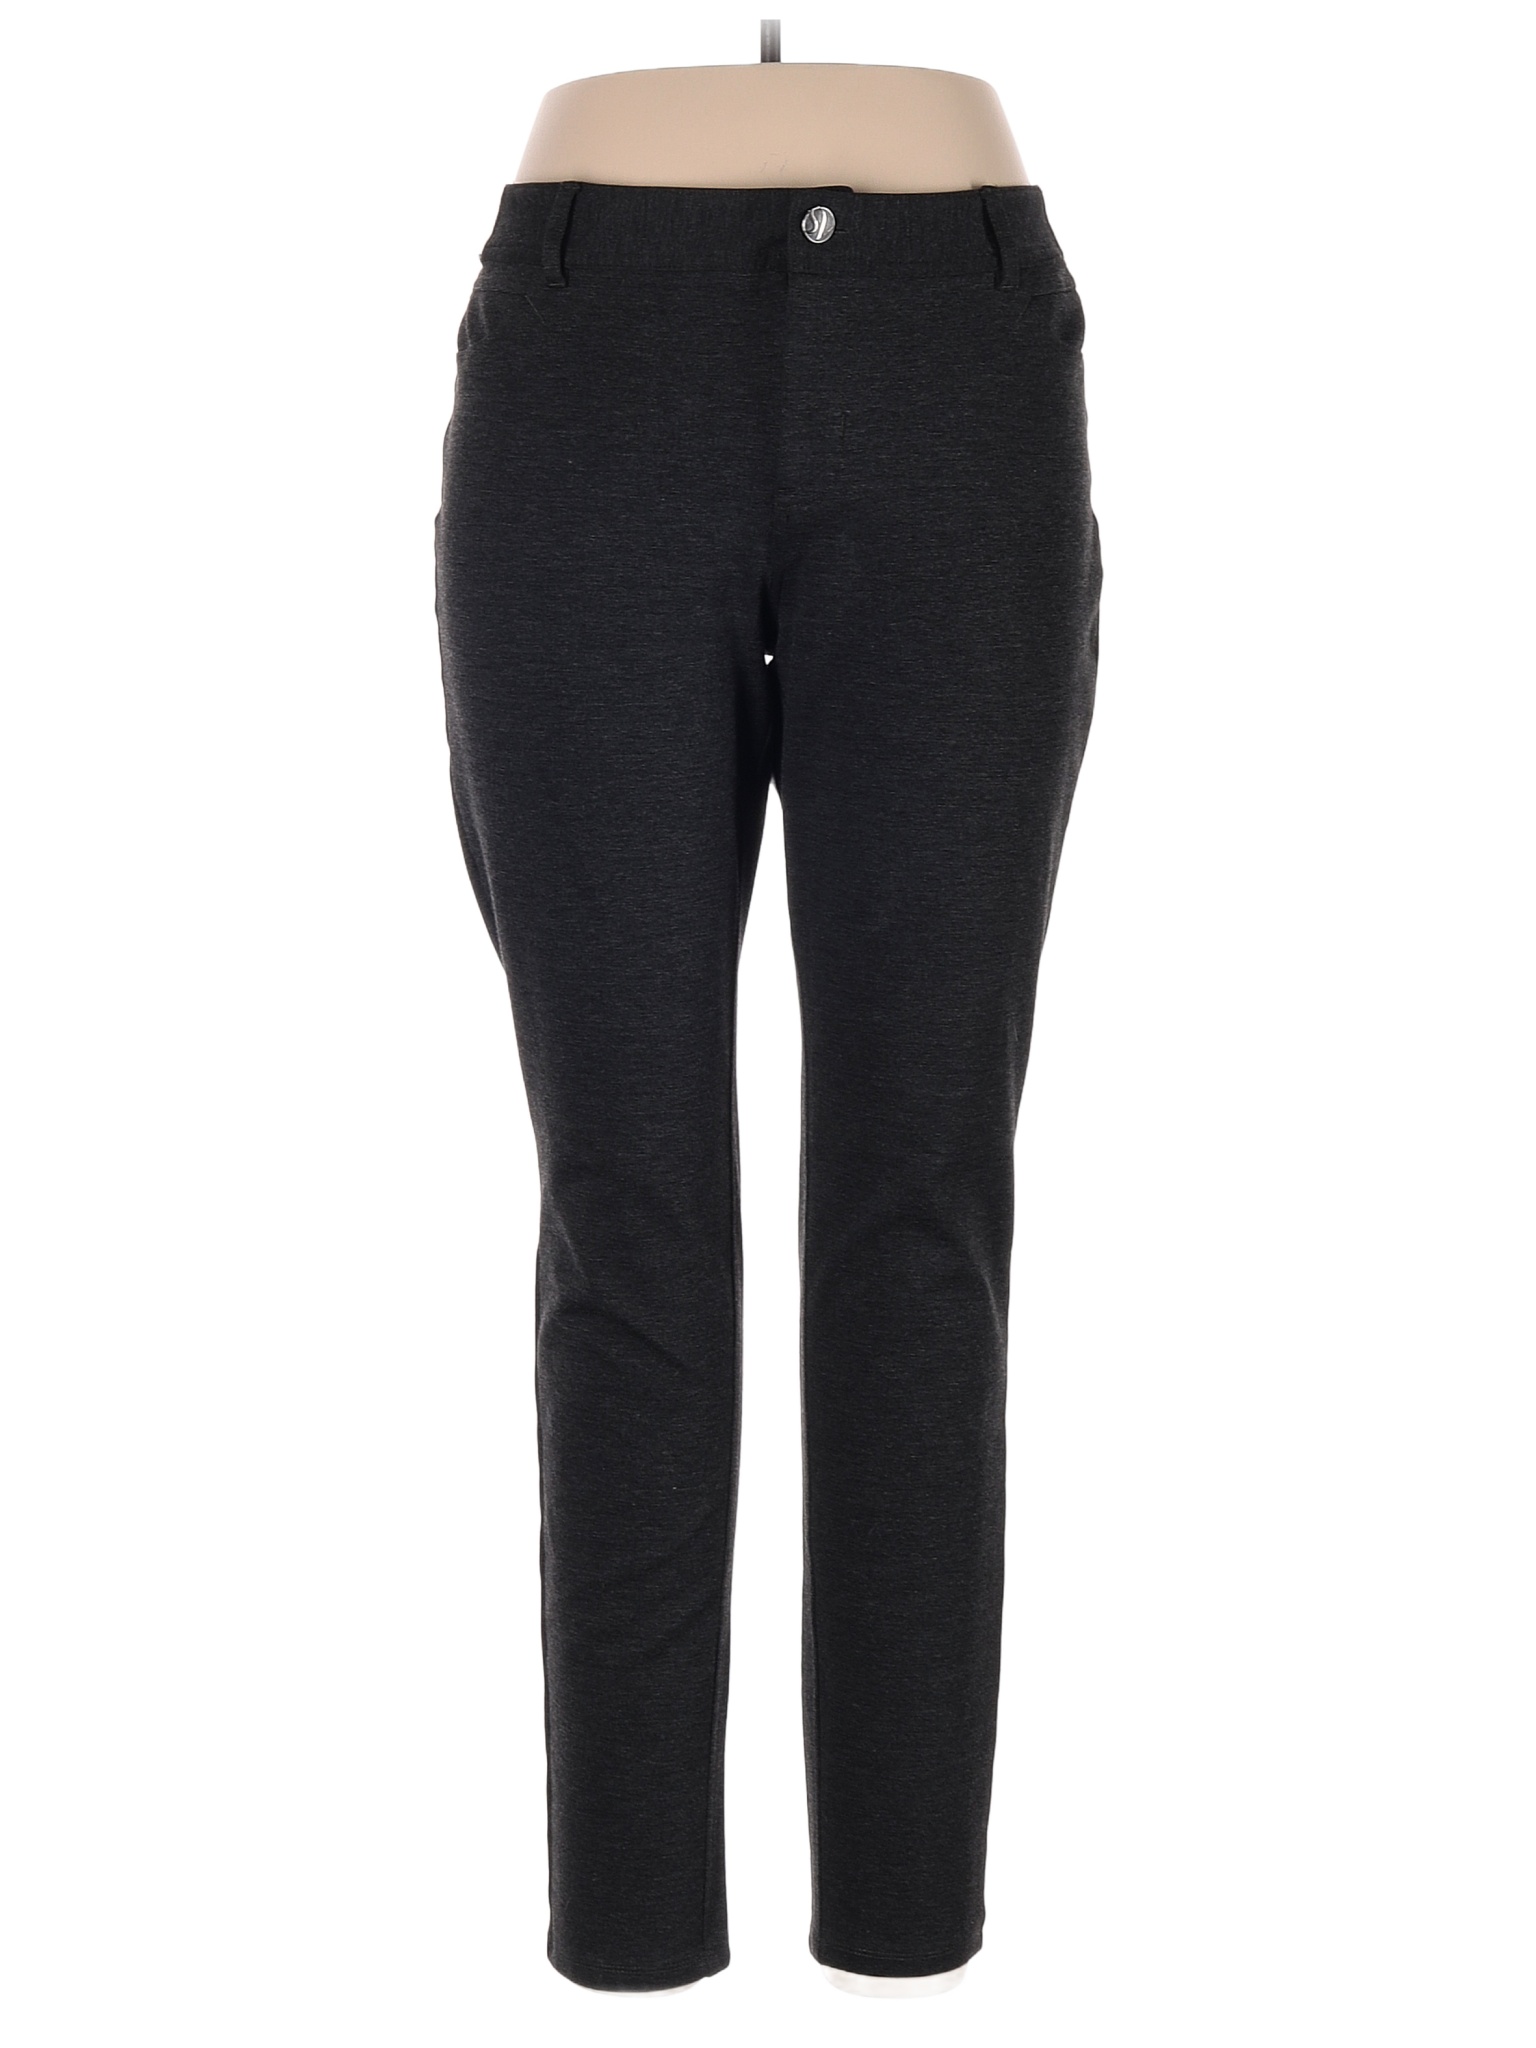 Simply Vera Vera Wang Solid Black Gray Casual Pants Size XL - 64% off ...